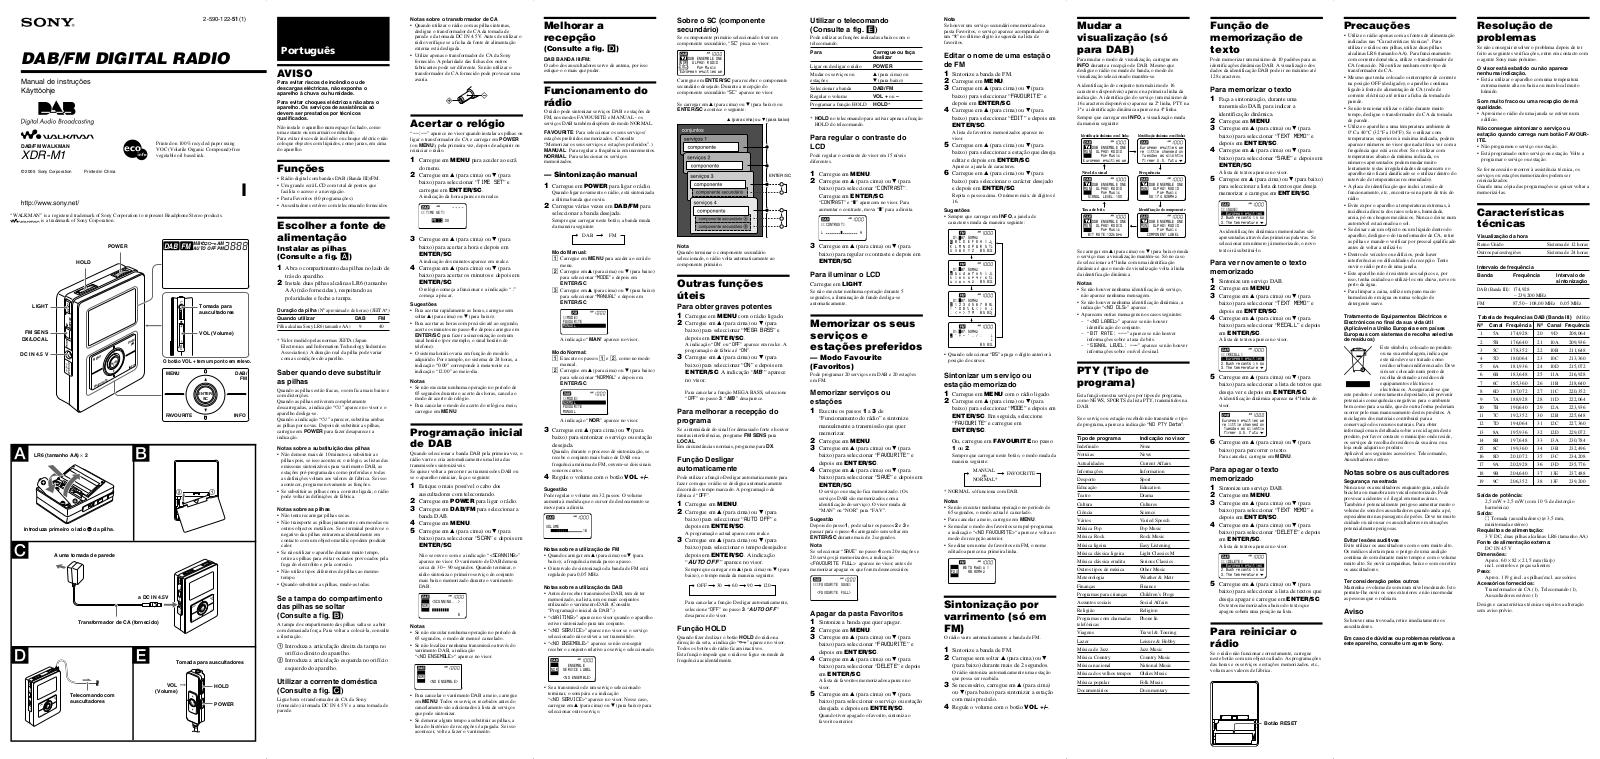 Sony VAIO VGN-TZ295N, VAIO VGN-TZ240N, VAIO VGN-TZ250N, VAIO VGN-TZ210E, VAIO VGN-TZ298N Operating Manual